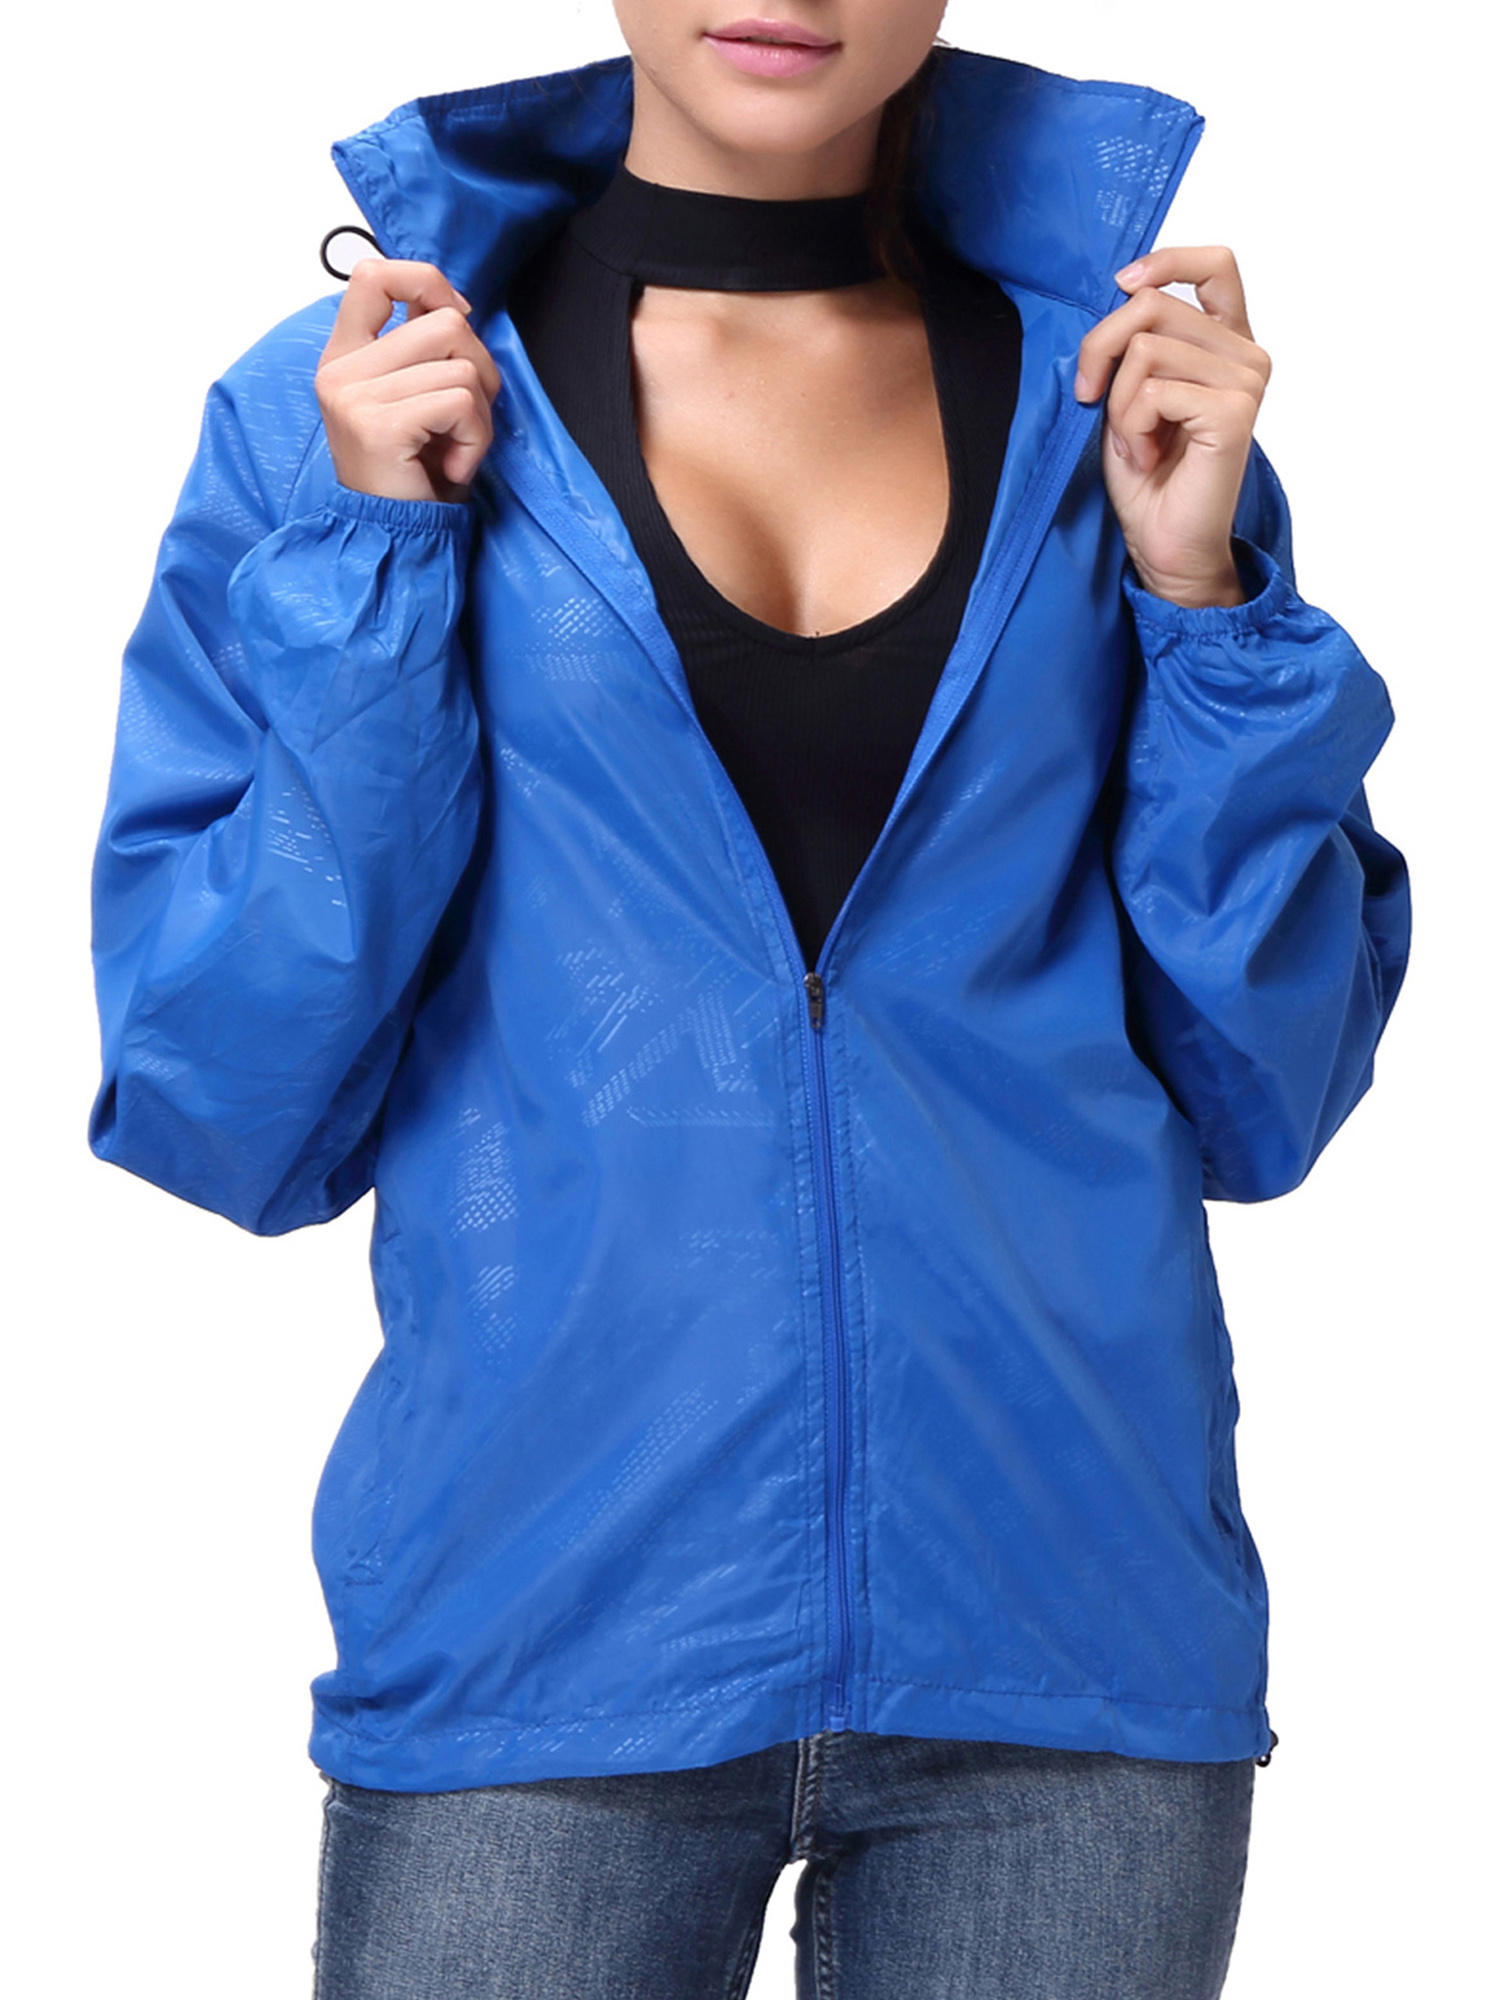 LELINTA Women Nylon Windbreaker Jacket Sport Casual Lightweight Zipper Hooded Outdoor Jacket, Black/ Royal Blue - image 1 of 9